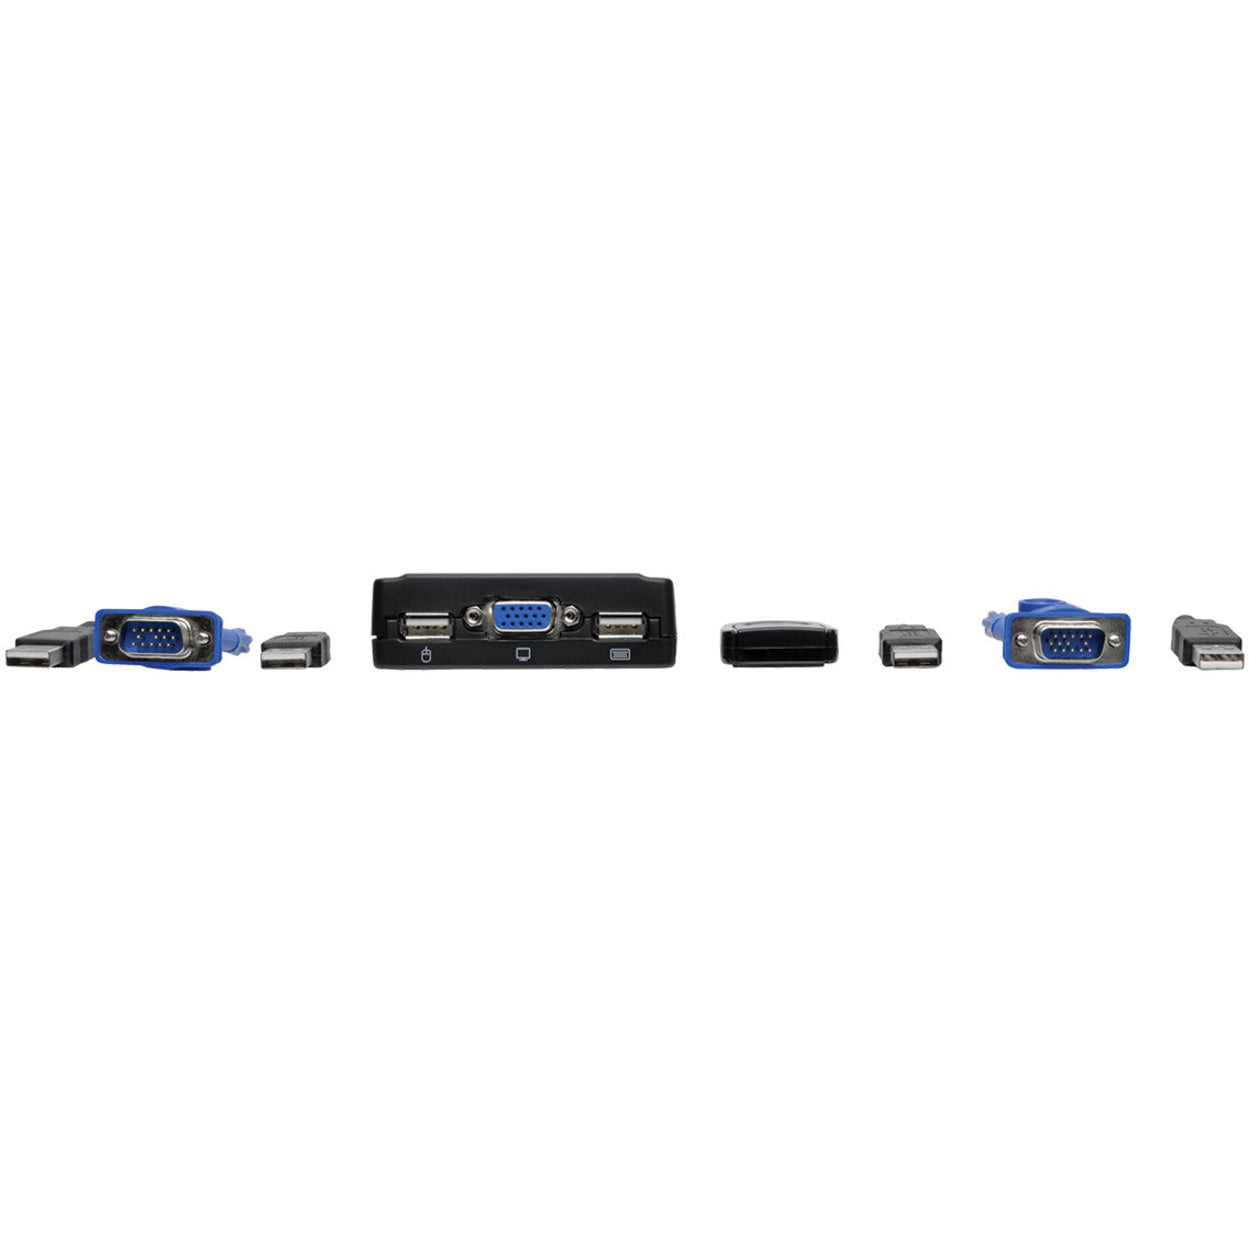 Tripp Lite B032-VU2 2-Port USB/VGA Kabel KVM-Switch mit Kabeln und USB-Peripherie-Sharing 2048 x 1536 Auflösung 3 Jahre Garantie